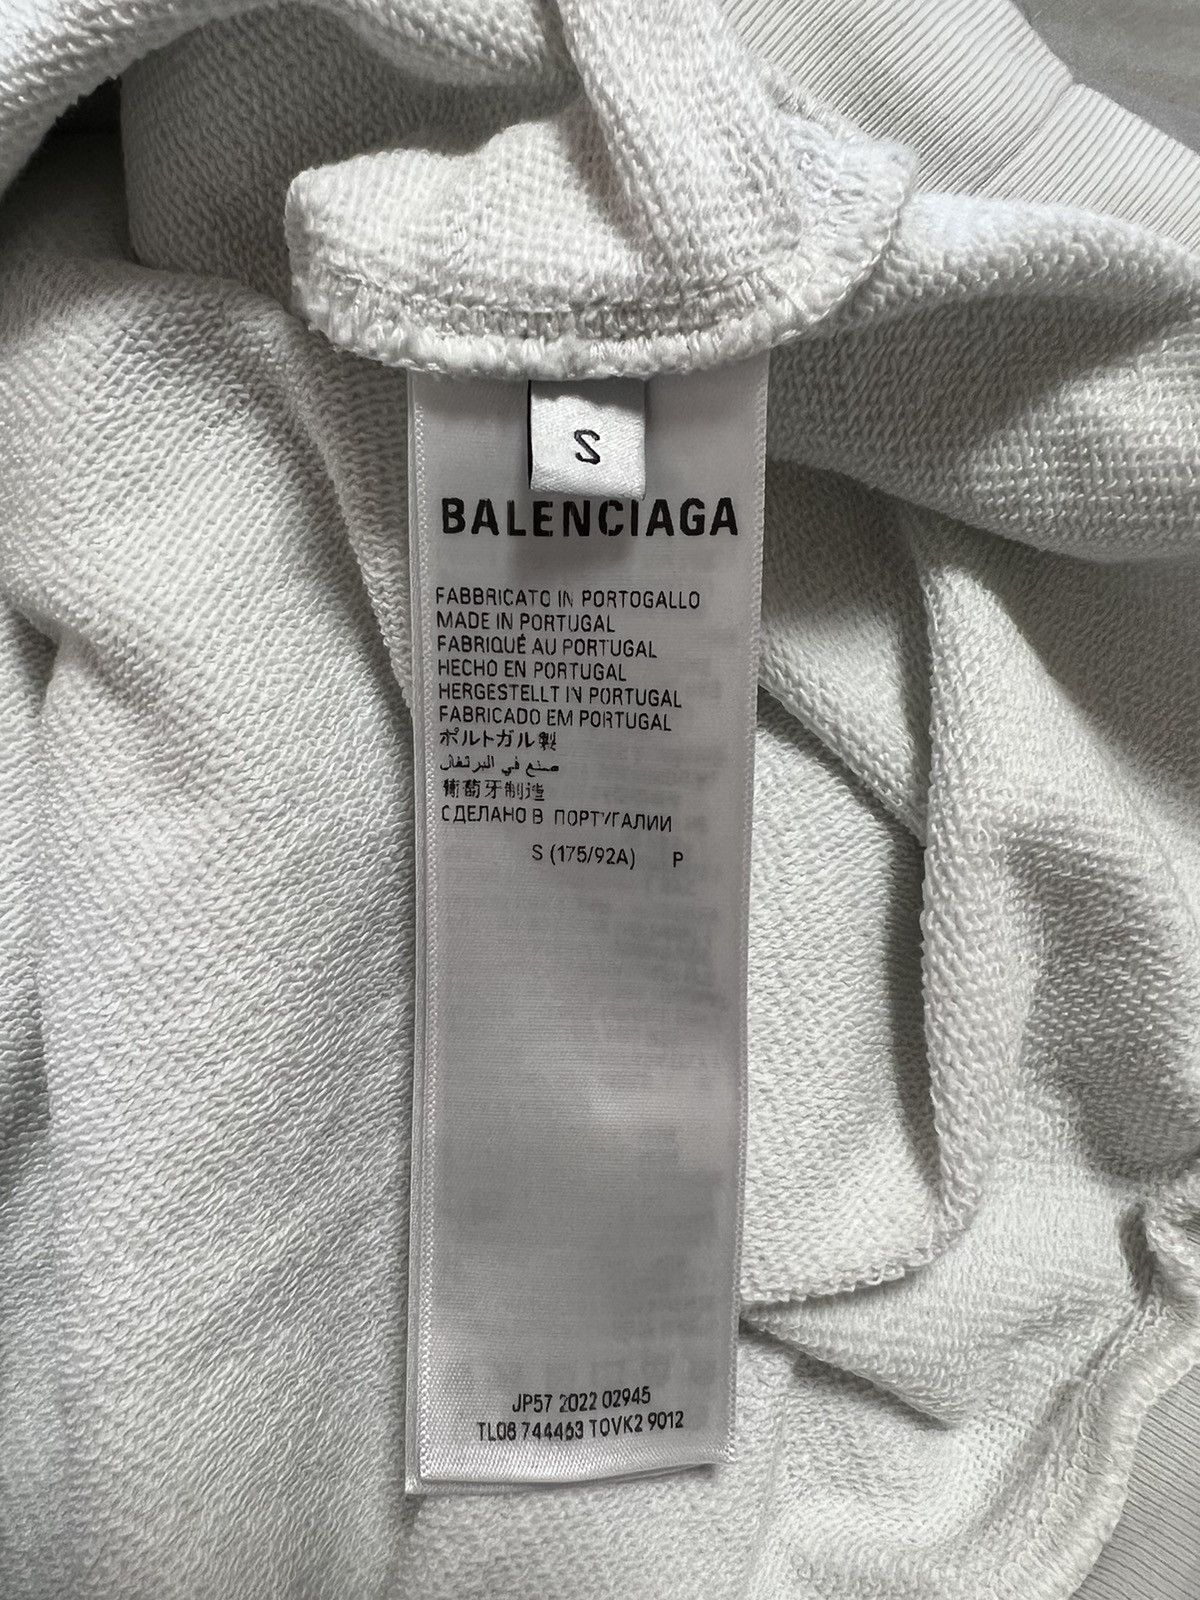 Balenciaga BALENCIAGA DIY COLLEGE HOODIE Size US S / EU 44-46 / 1 - 5 Thumbnail